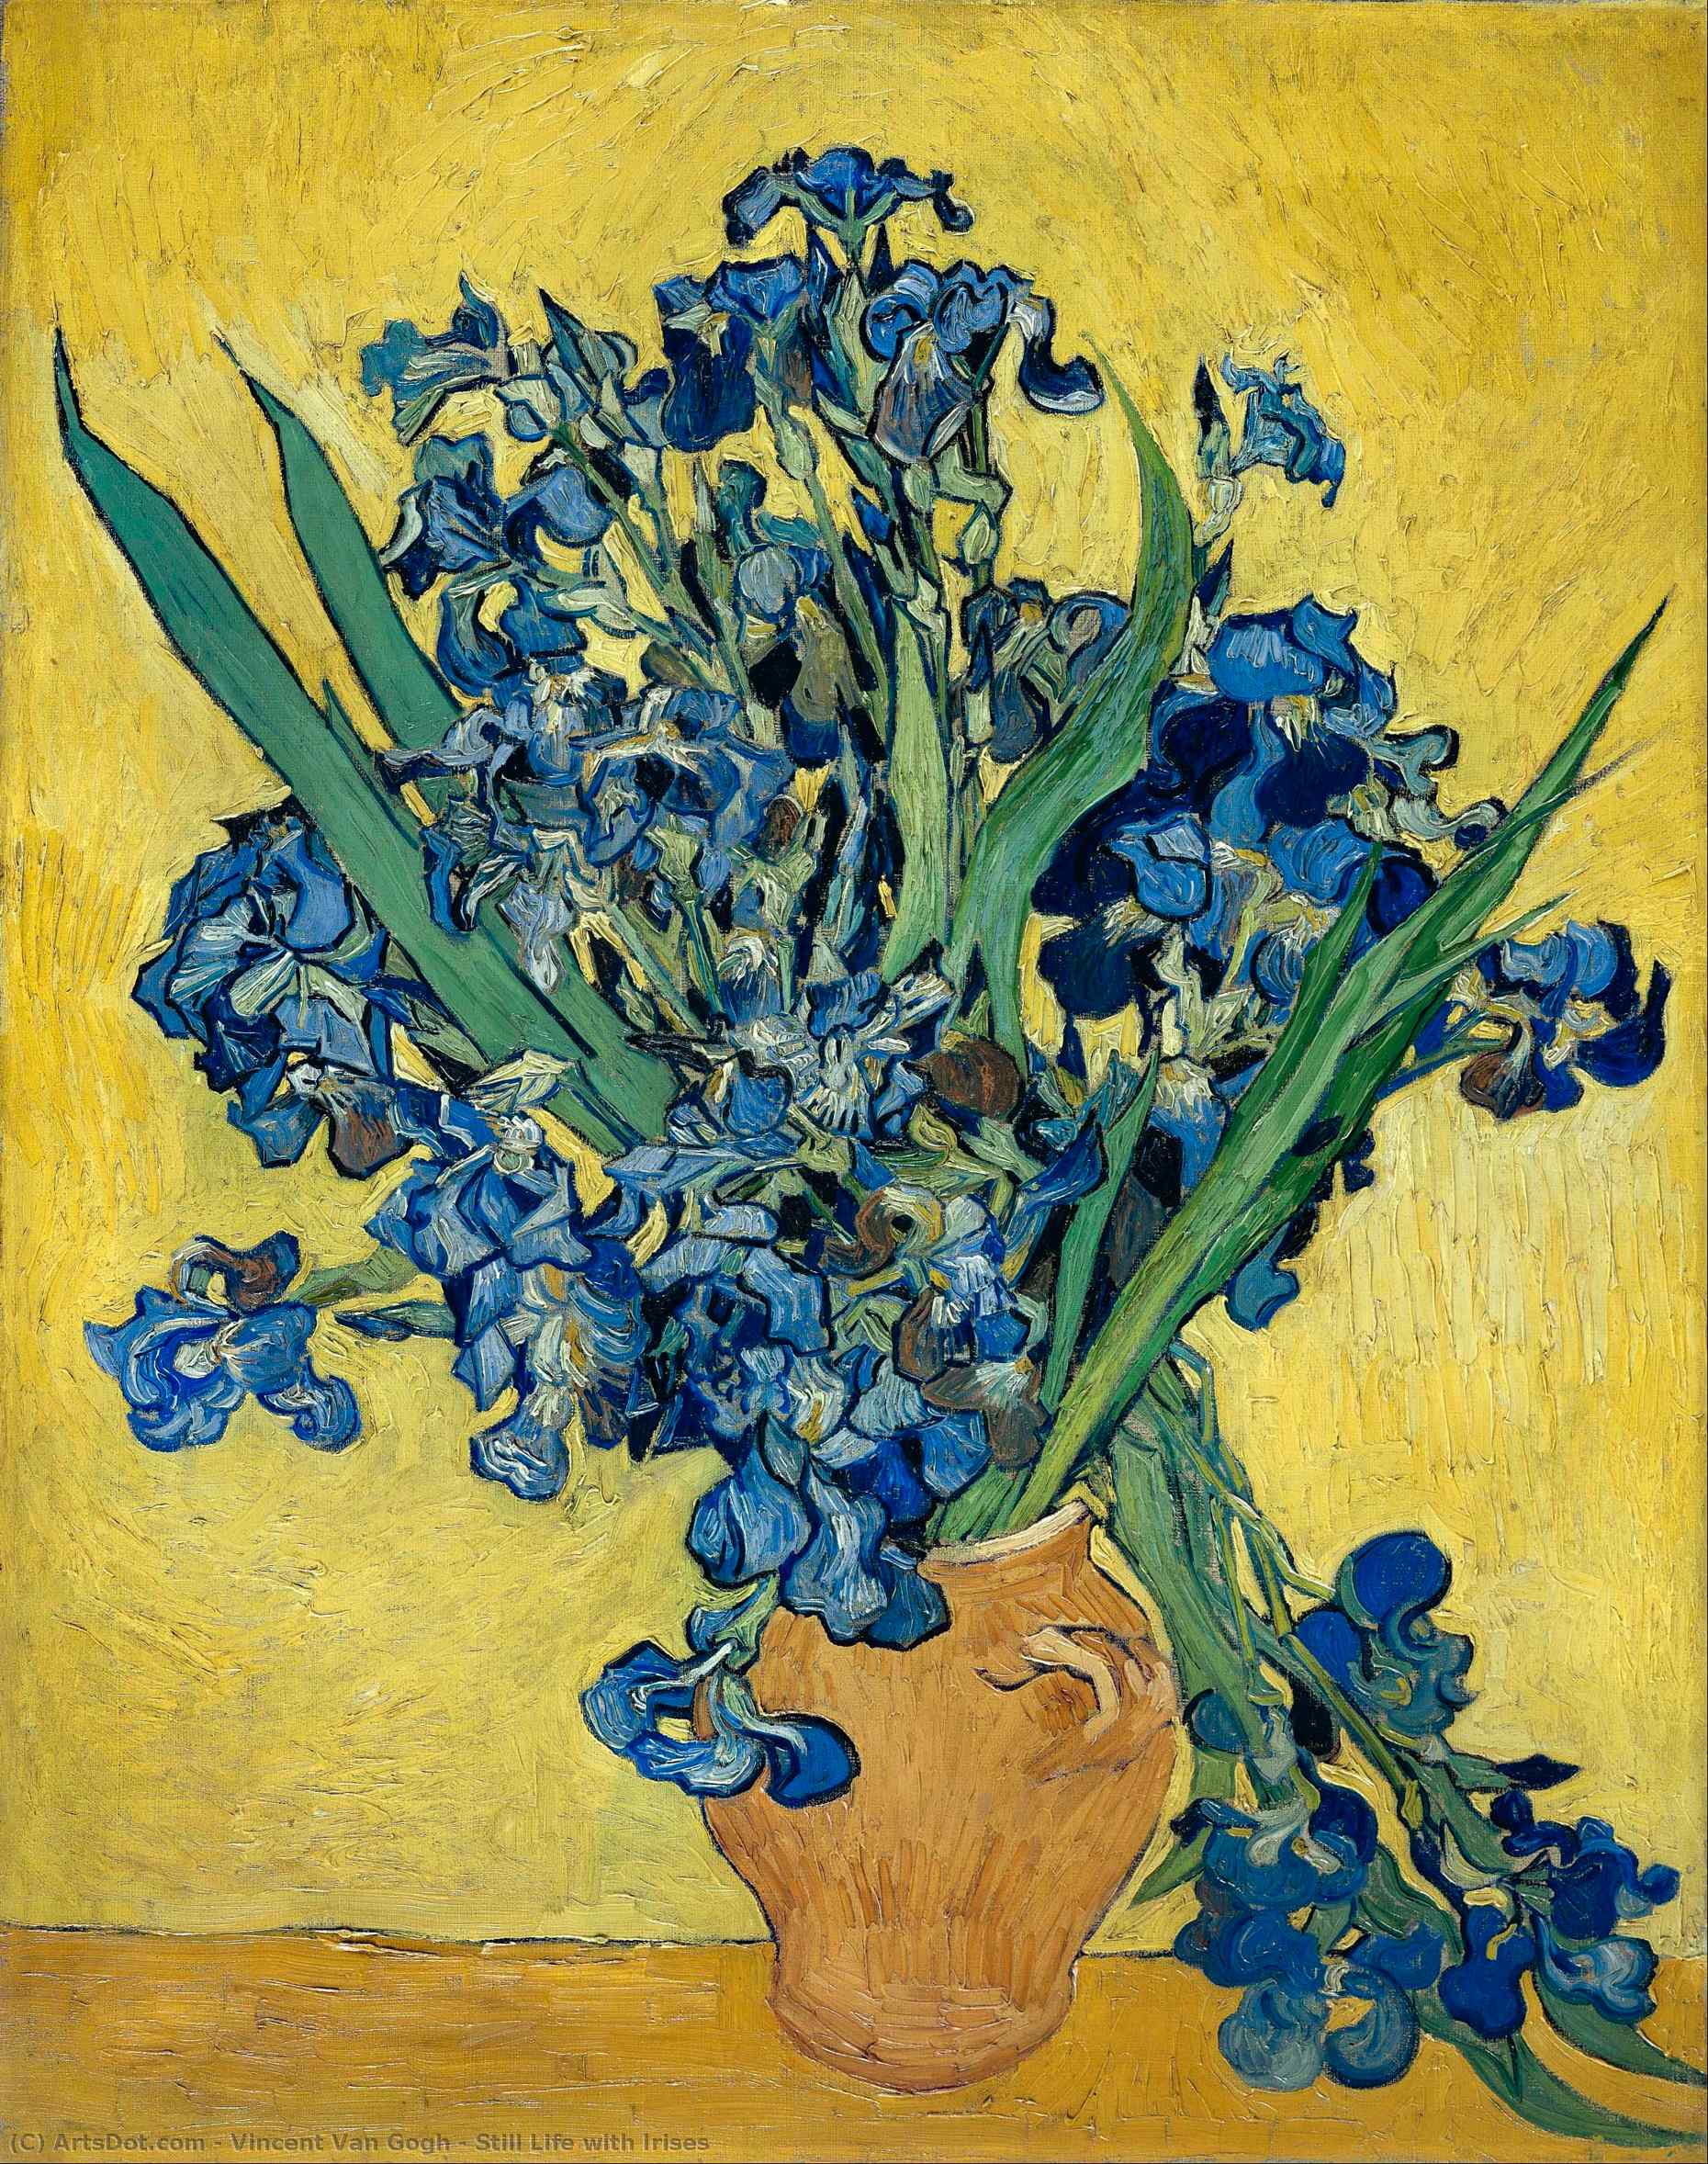 WikiOO.org - Encyclopedia of Fine Arts - Målning, konstverk Vincent Van Gogh - Still Life with Irises